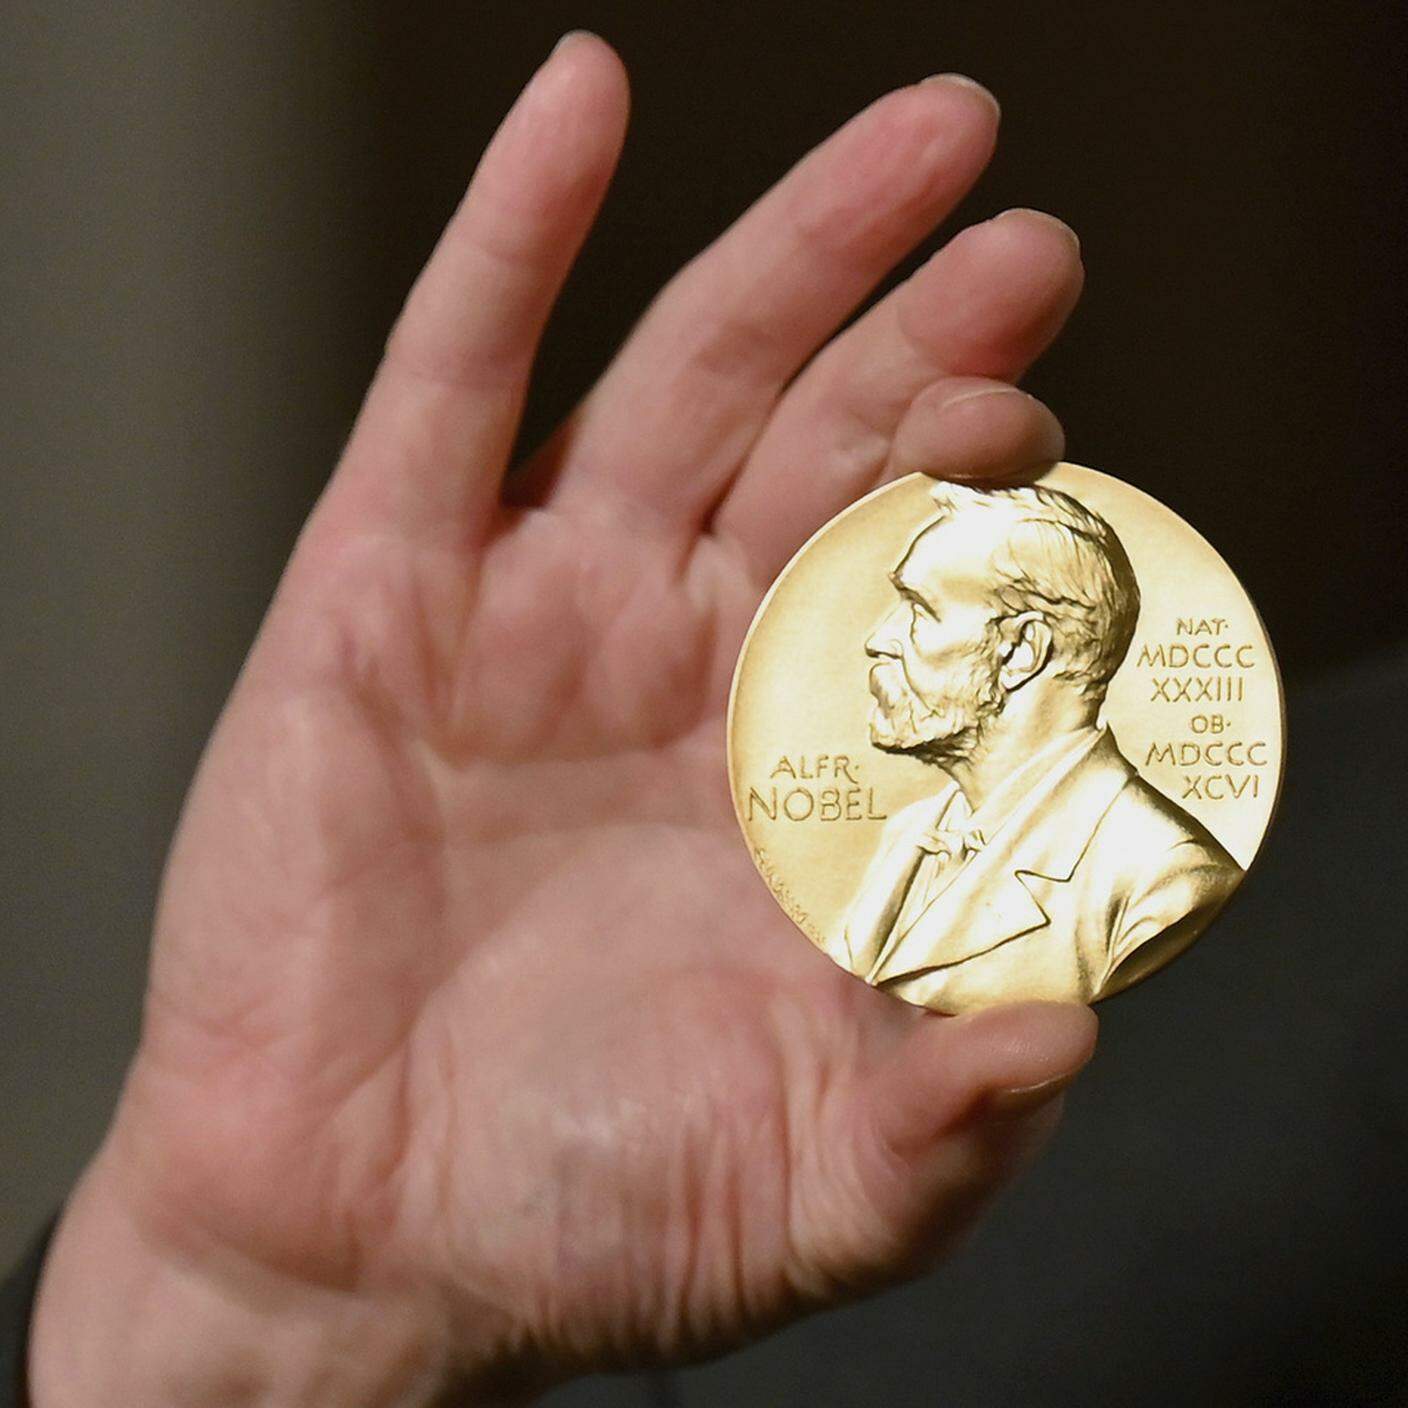 Il premio: una medaglia d'oro e 10 milioni di corone svedesi da spartire equamente